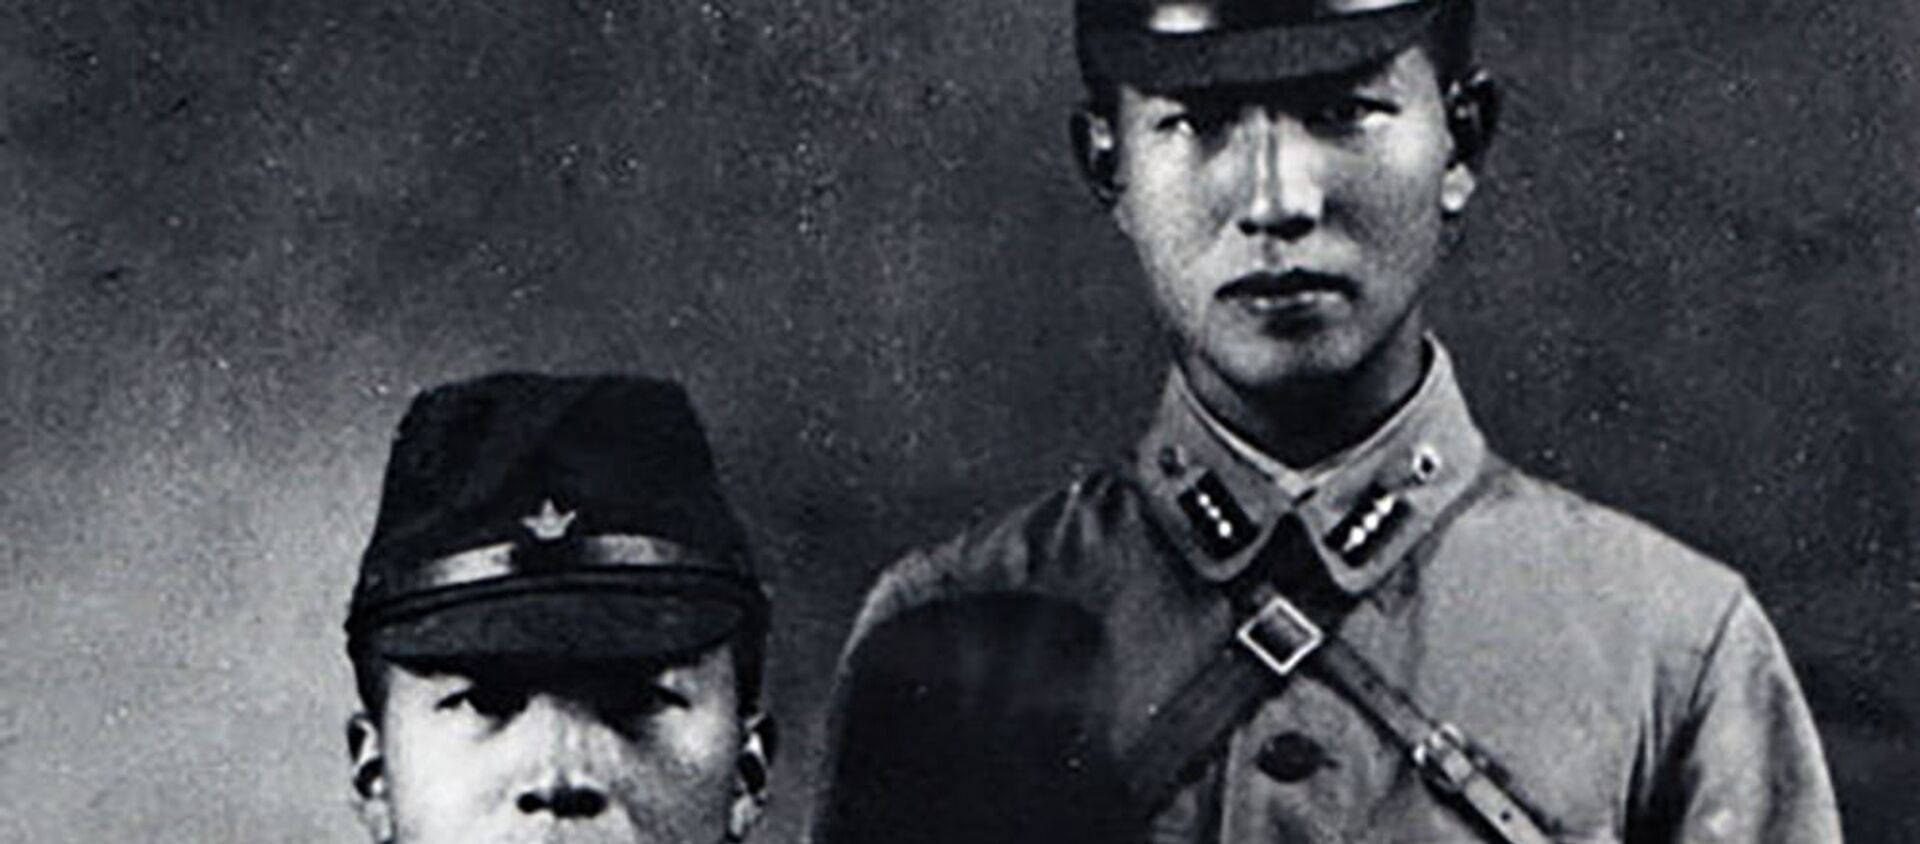  Младший лейтенант войсковой разведки японских ВС Хироо Онода (справа) - Sputnik Արմենիա, 1920, 09.03.2021